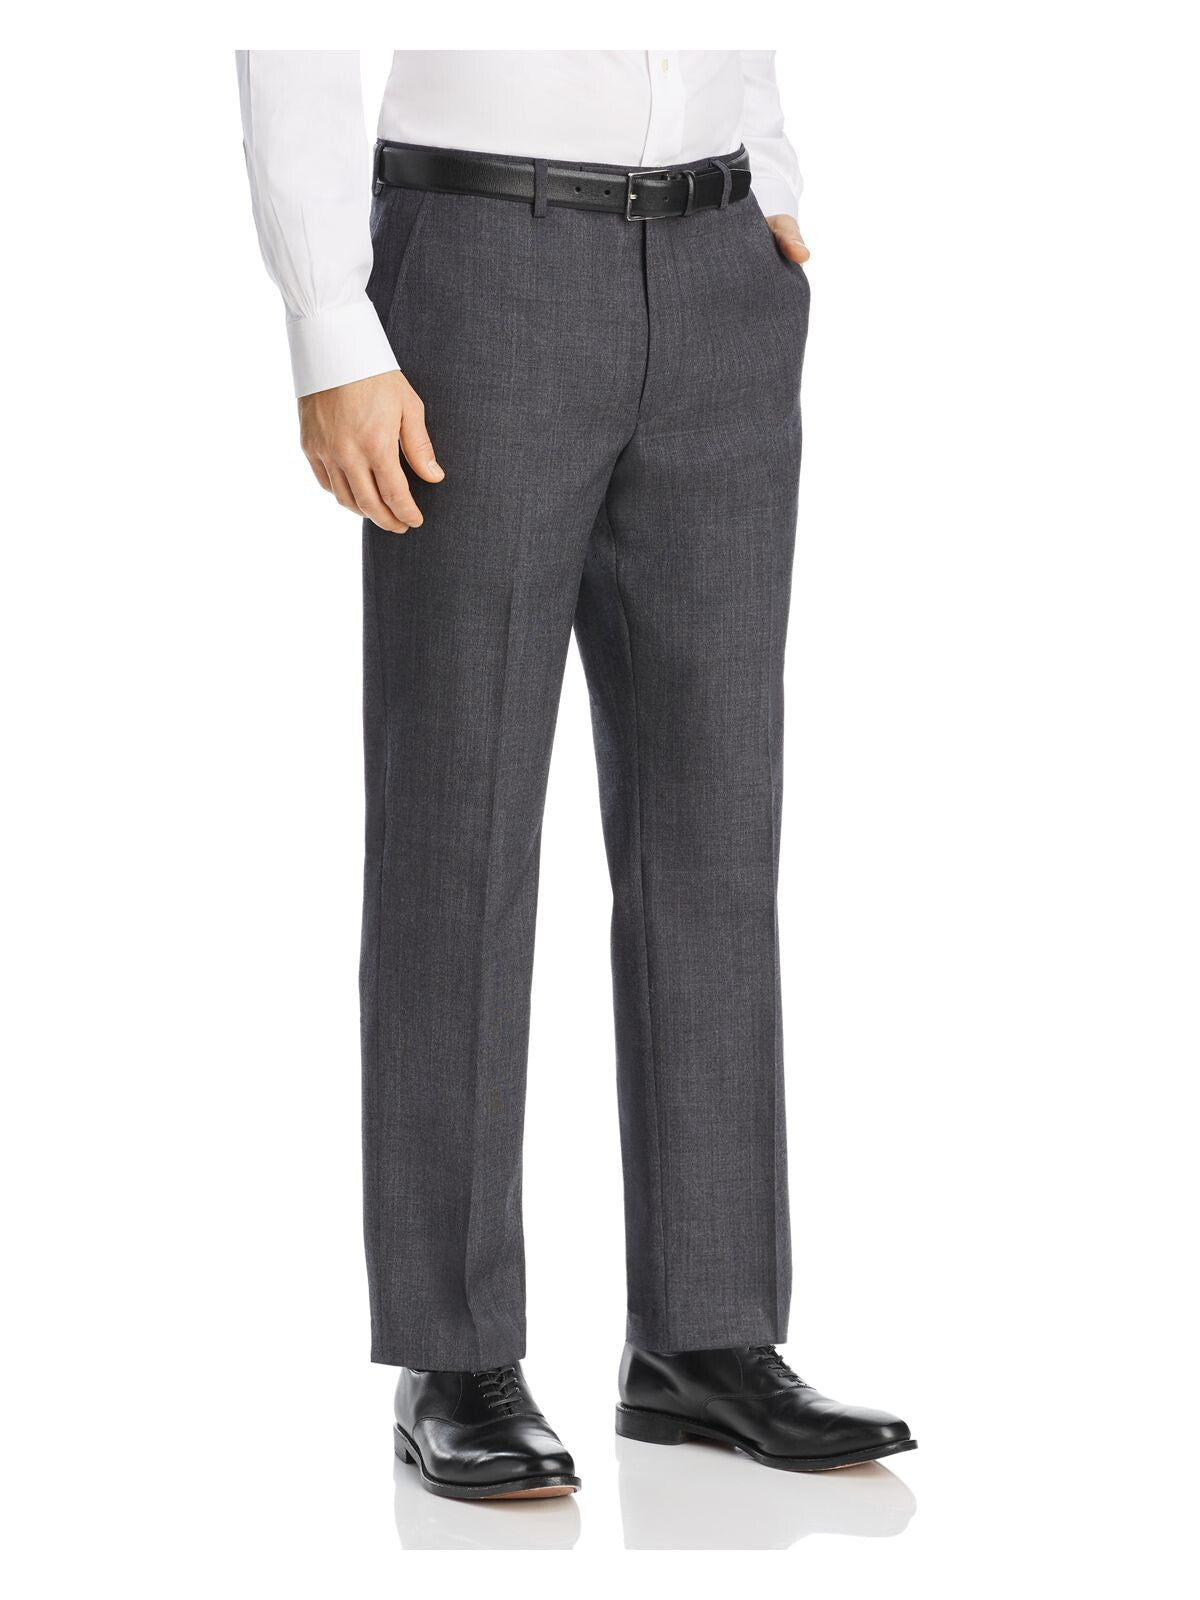 MICHAEL KORS Mens Black Flat Front, Classic Fit Suit Separate Pants W33/ L30